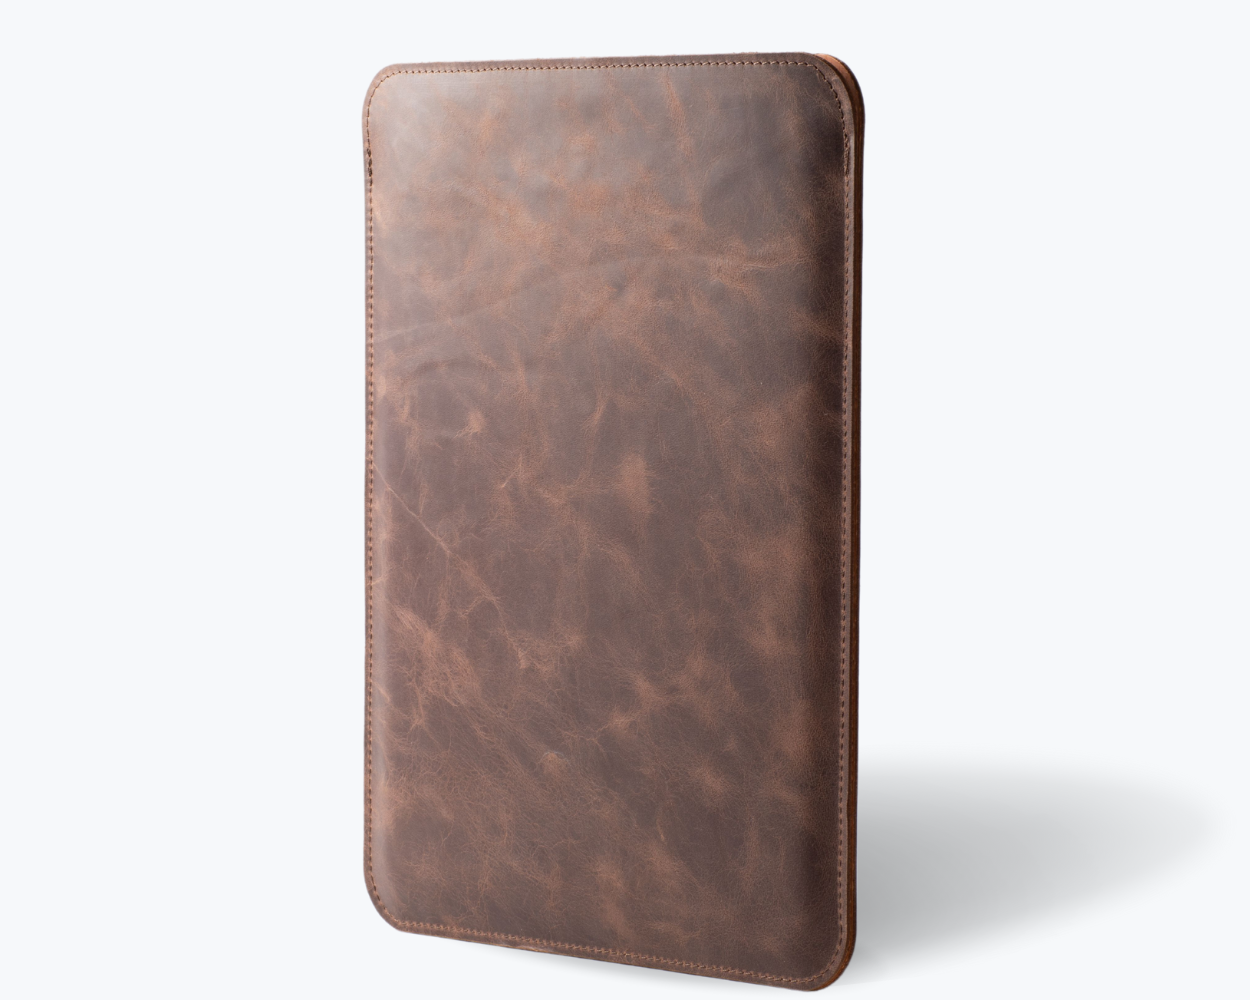 Vintage Leather Apple iPad Pro 12.9" Sleeve